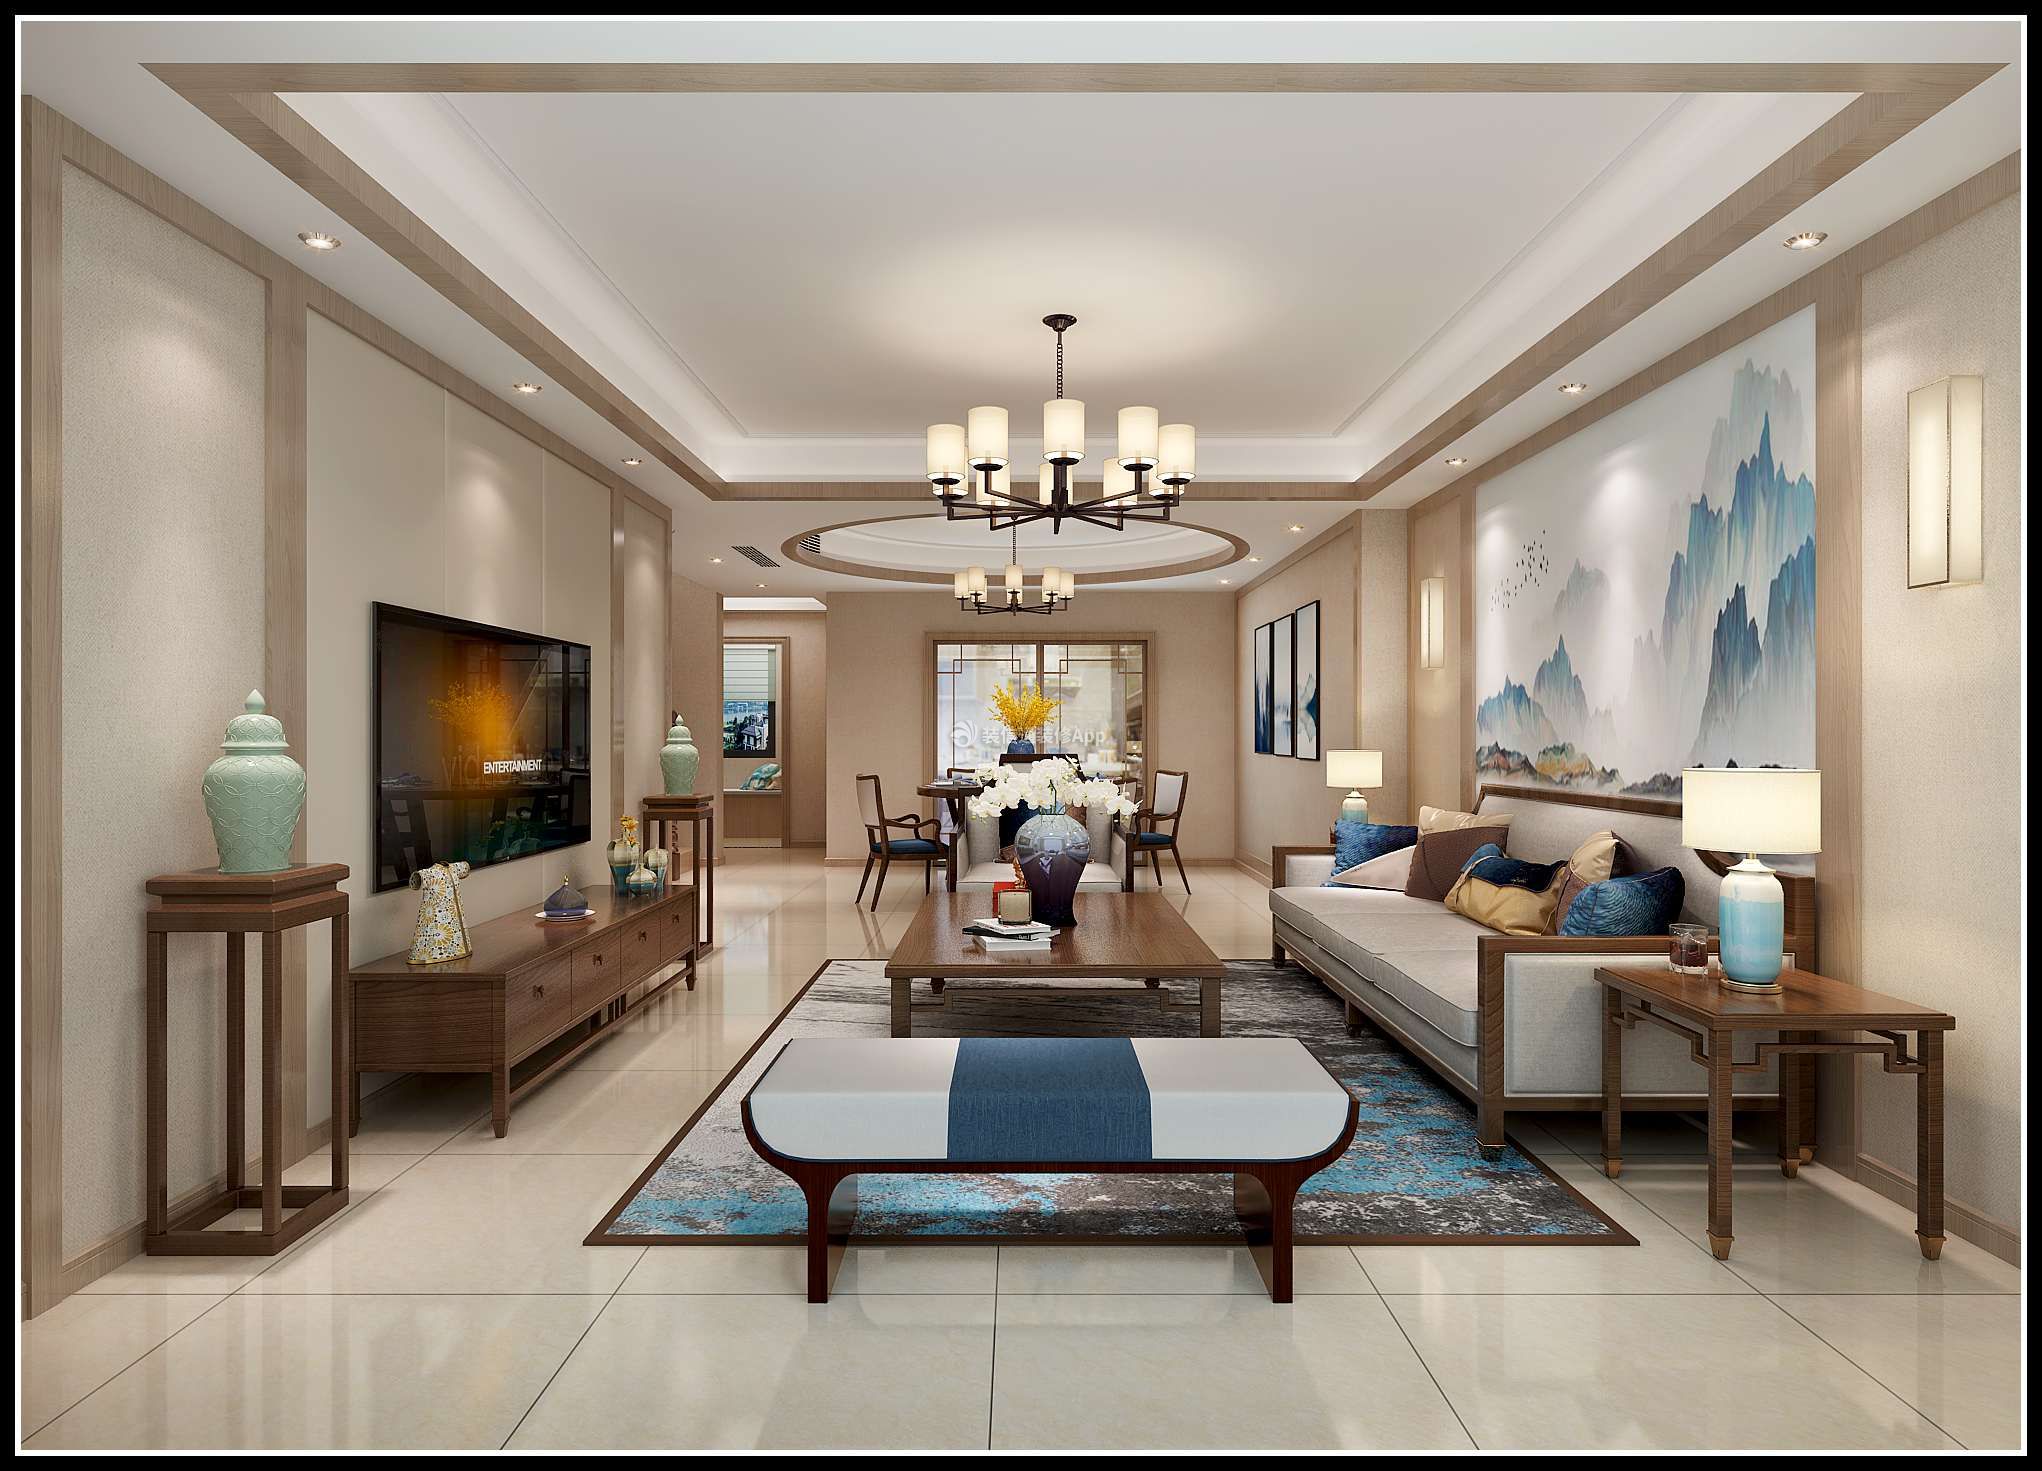  新中式别墅客厅设计 新中式别墅客厅效果图 中式沙发图片